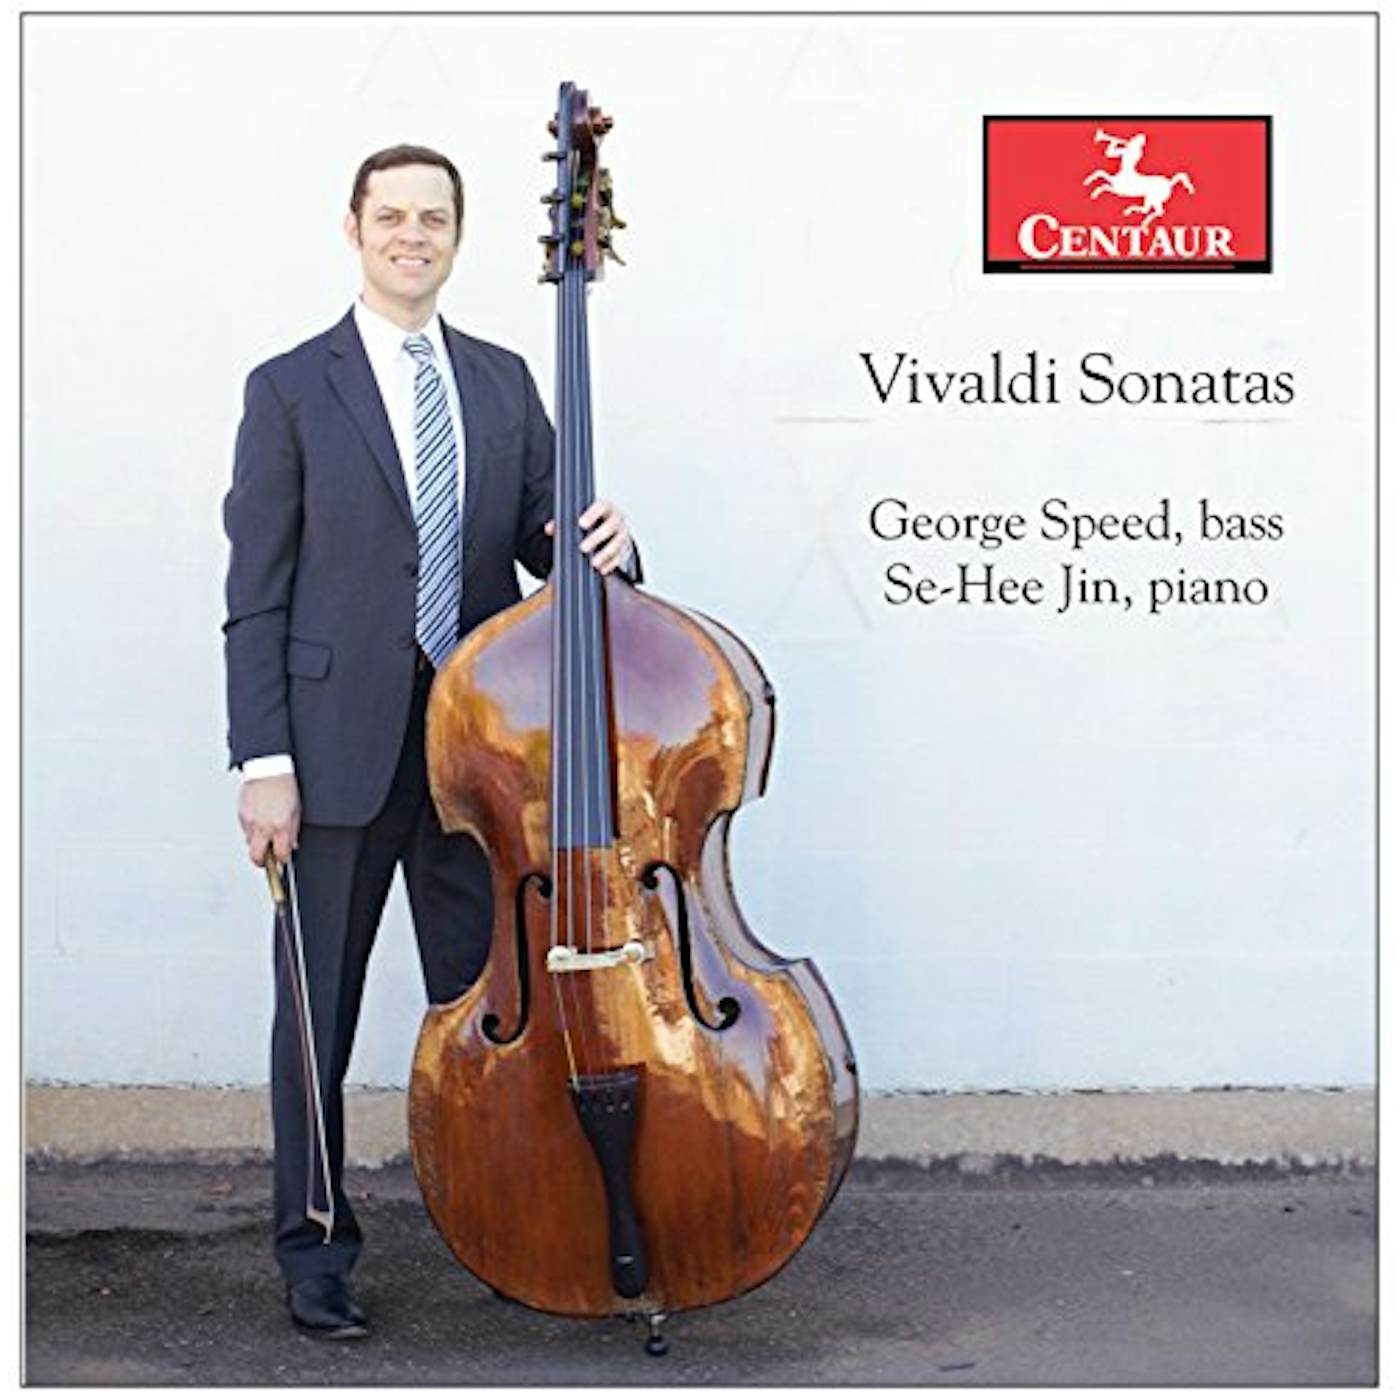 Antonio Vivaldi SONATAS CD